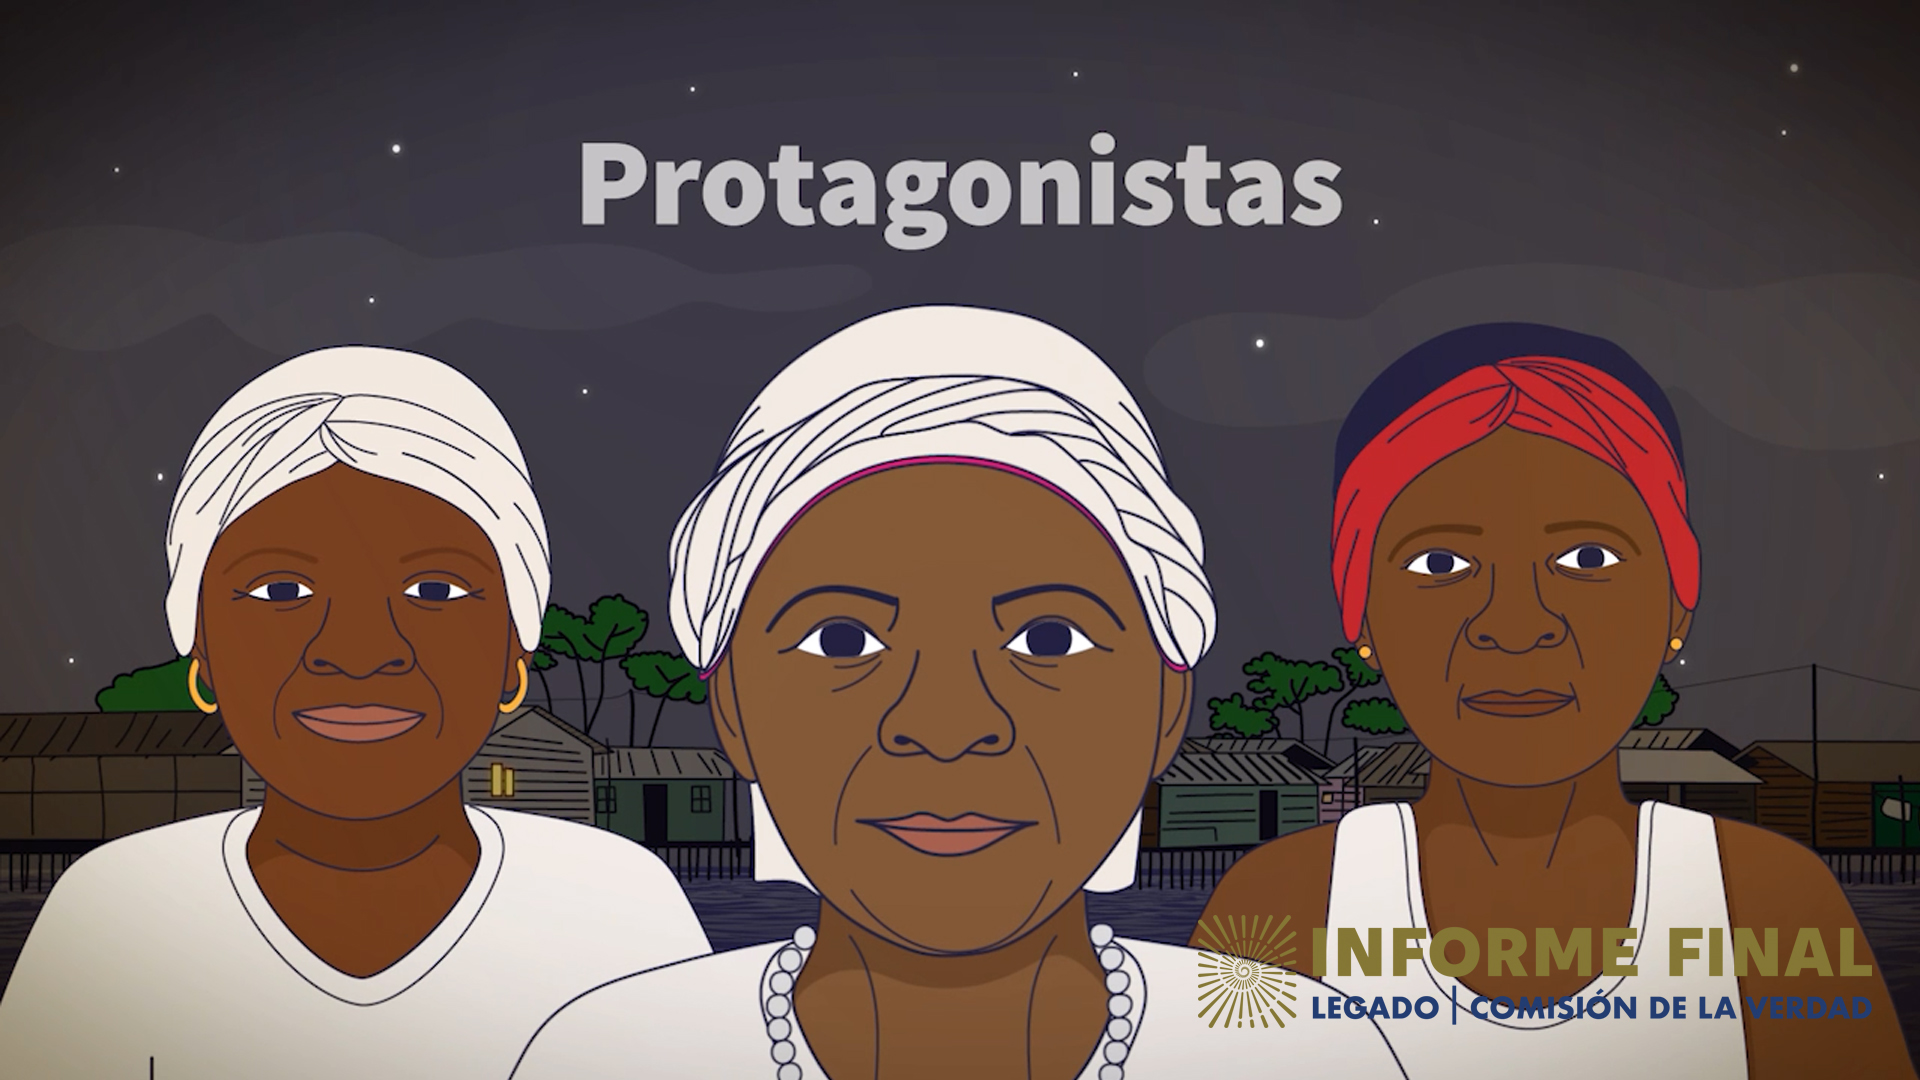 Ilustración de 3 mujeres afro con turbantes. Arriba el texto: Protagonistas